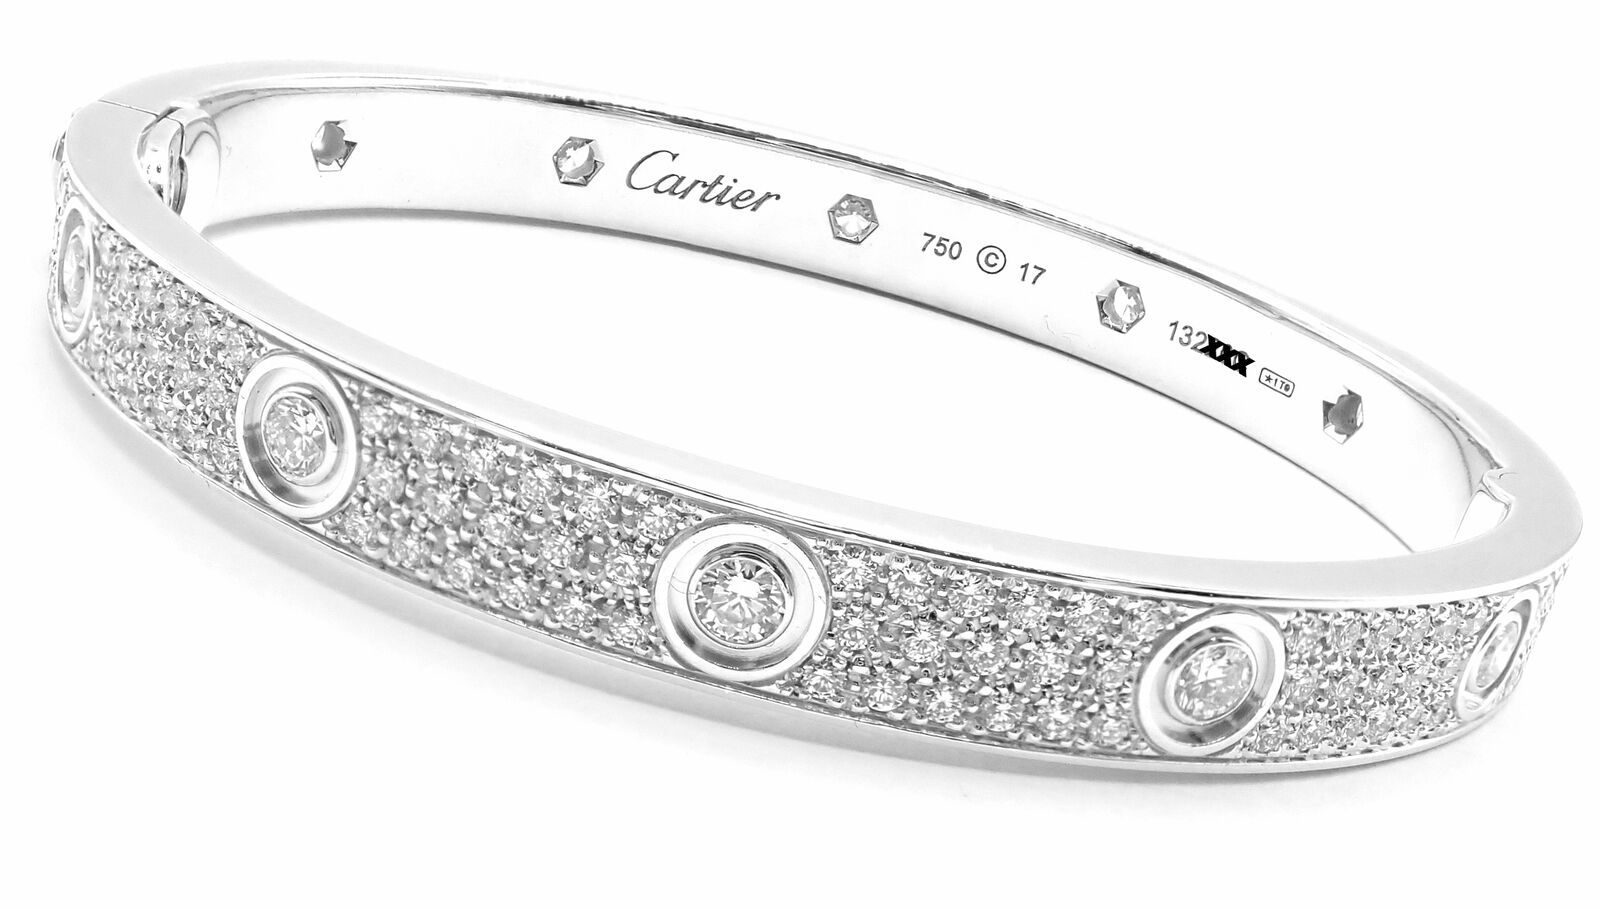 #LOVE# bracelet, diamond-paved